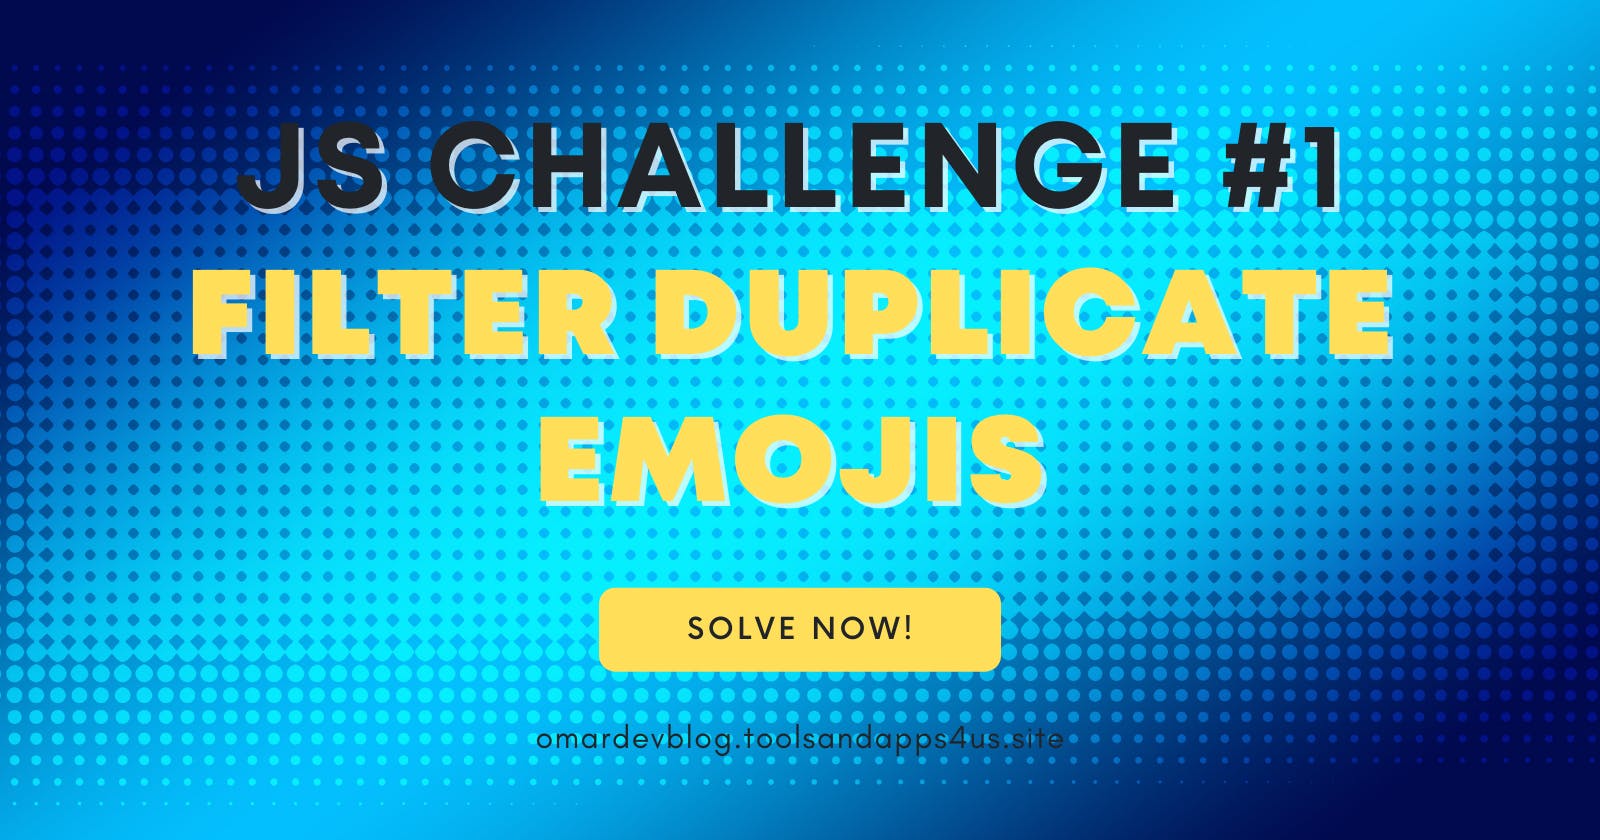 JS CHALLENGE #1: Filter Duplicate Emojis